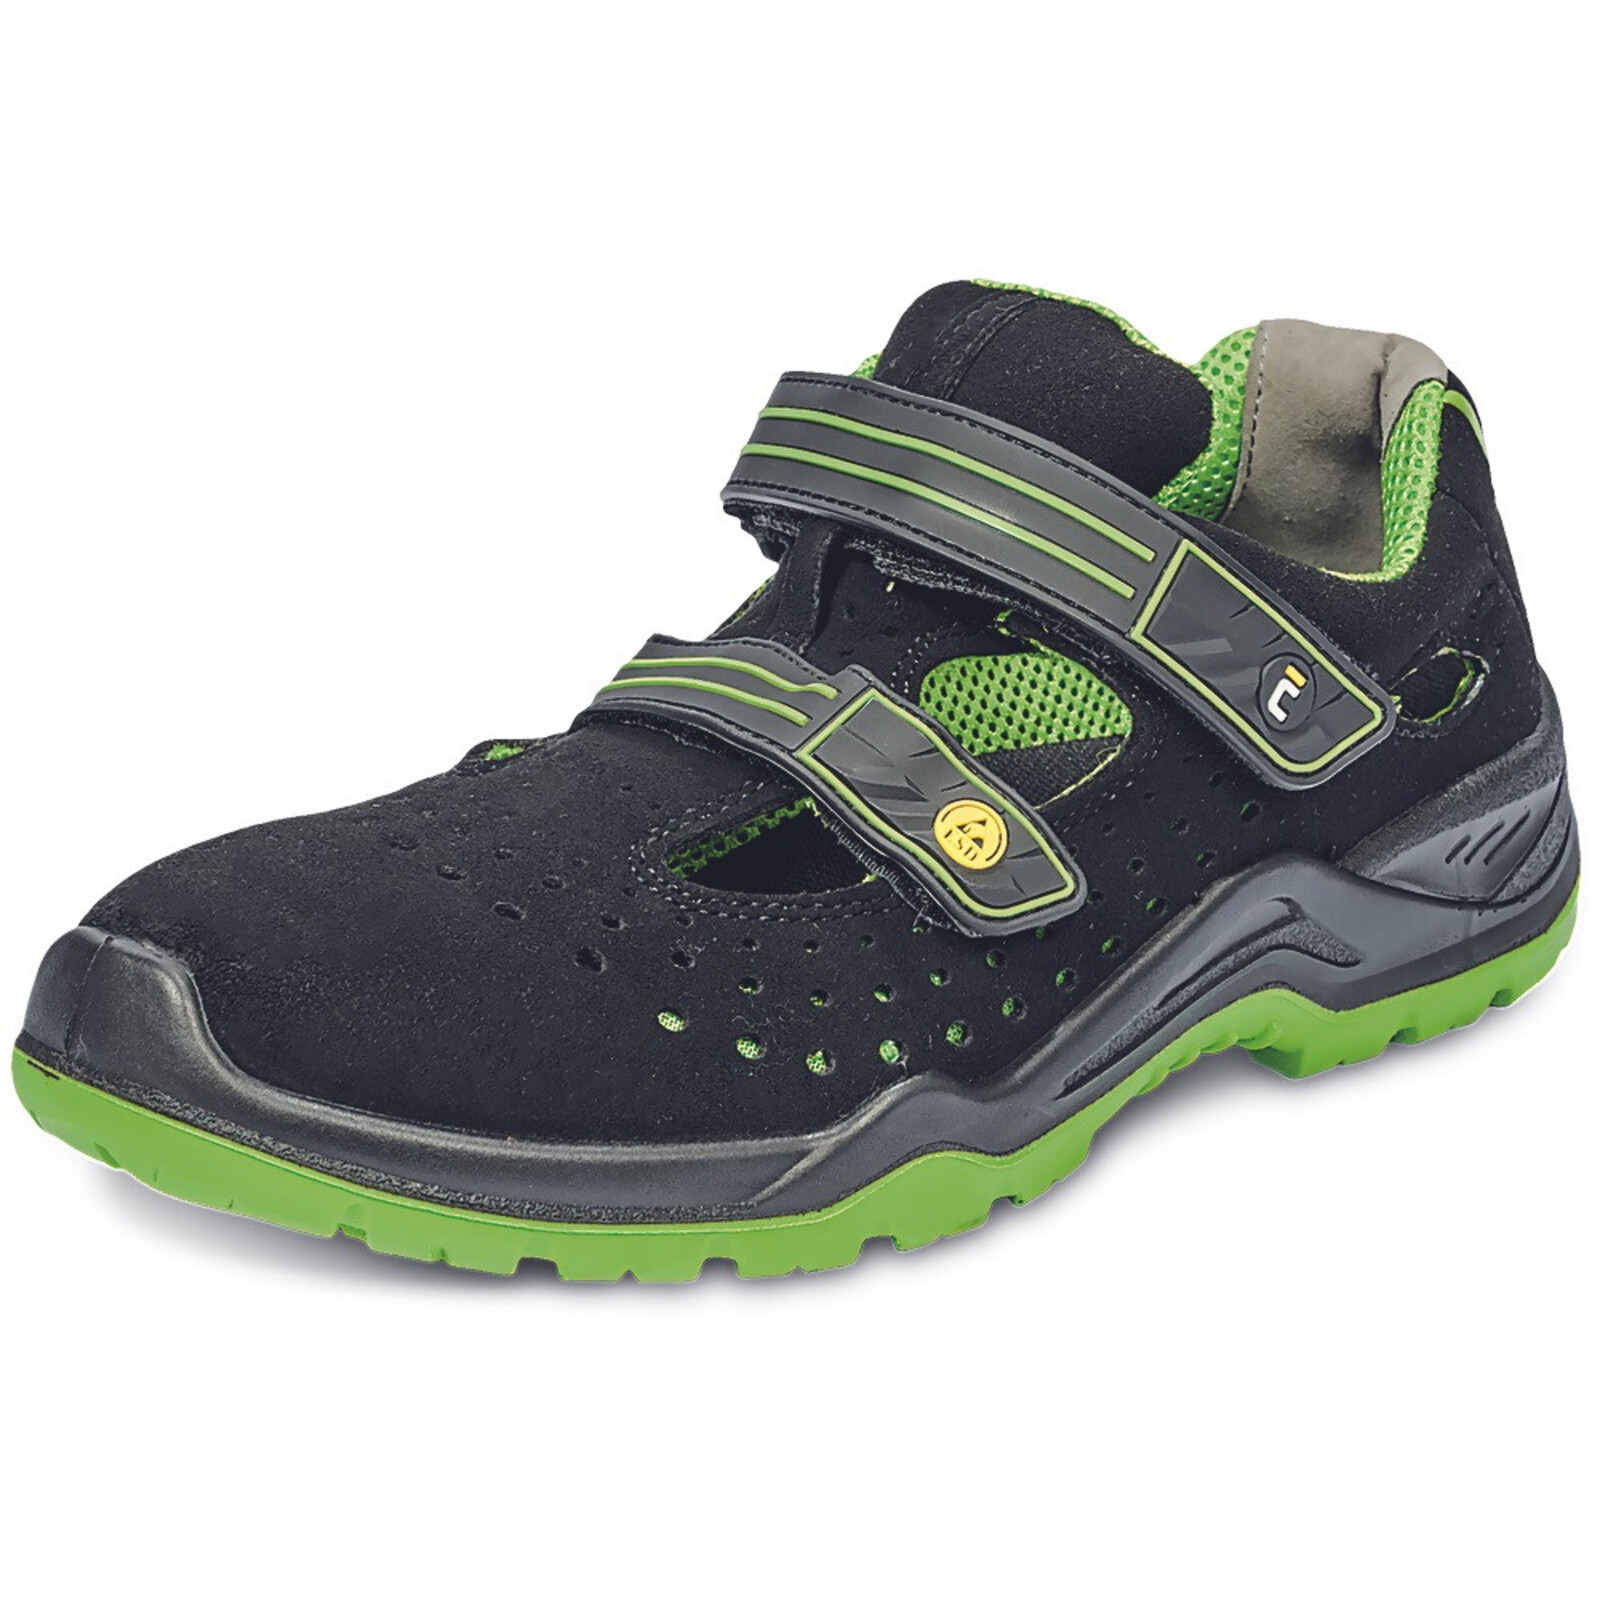 Bezpečnostné sandále Cerva Halwill MF ESD S1P SRC - veľkosť: 35, farba: čierna/zelená